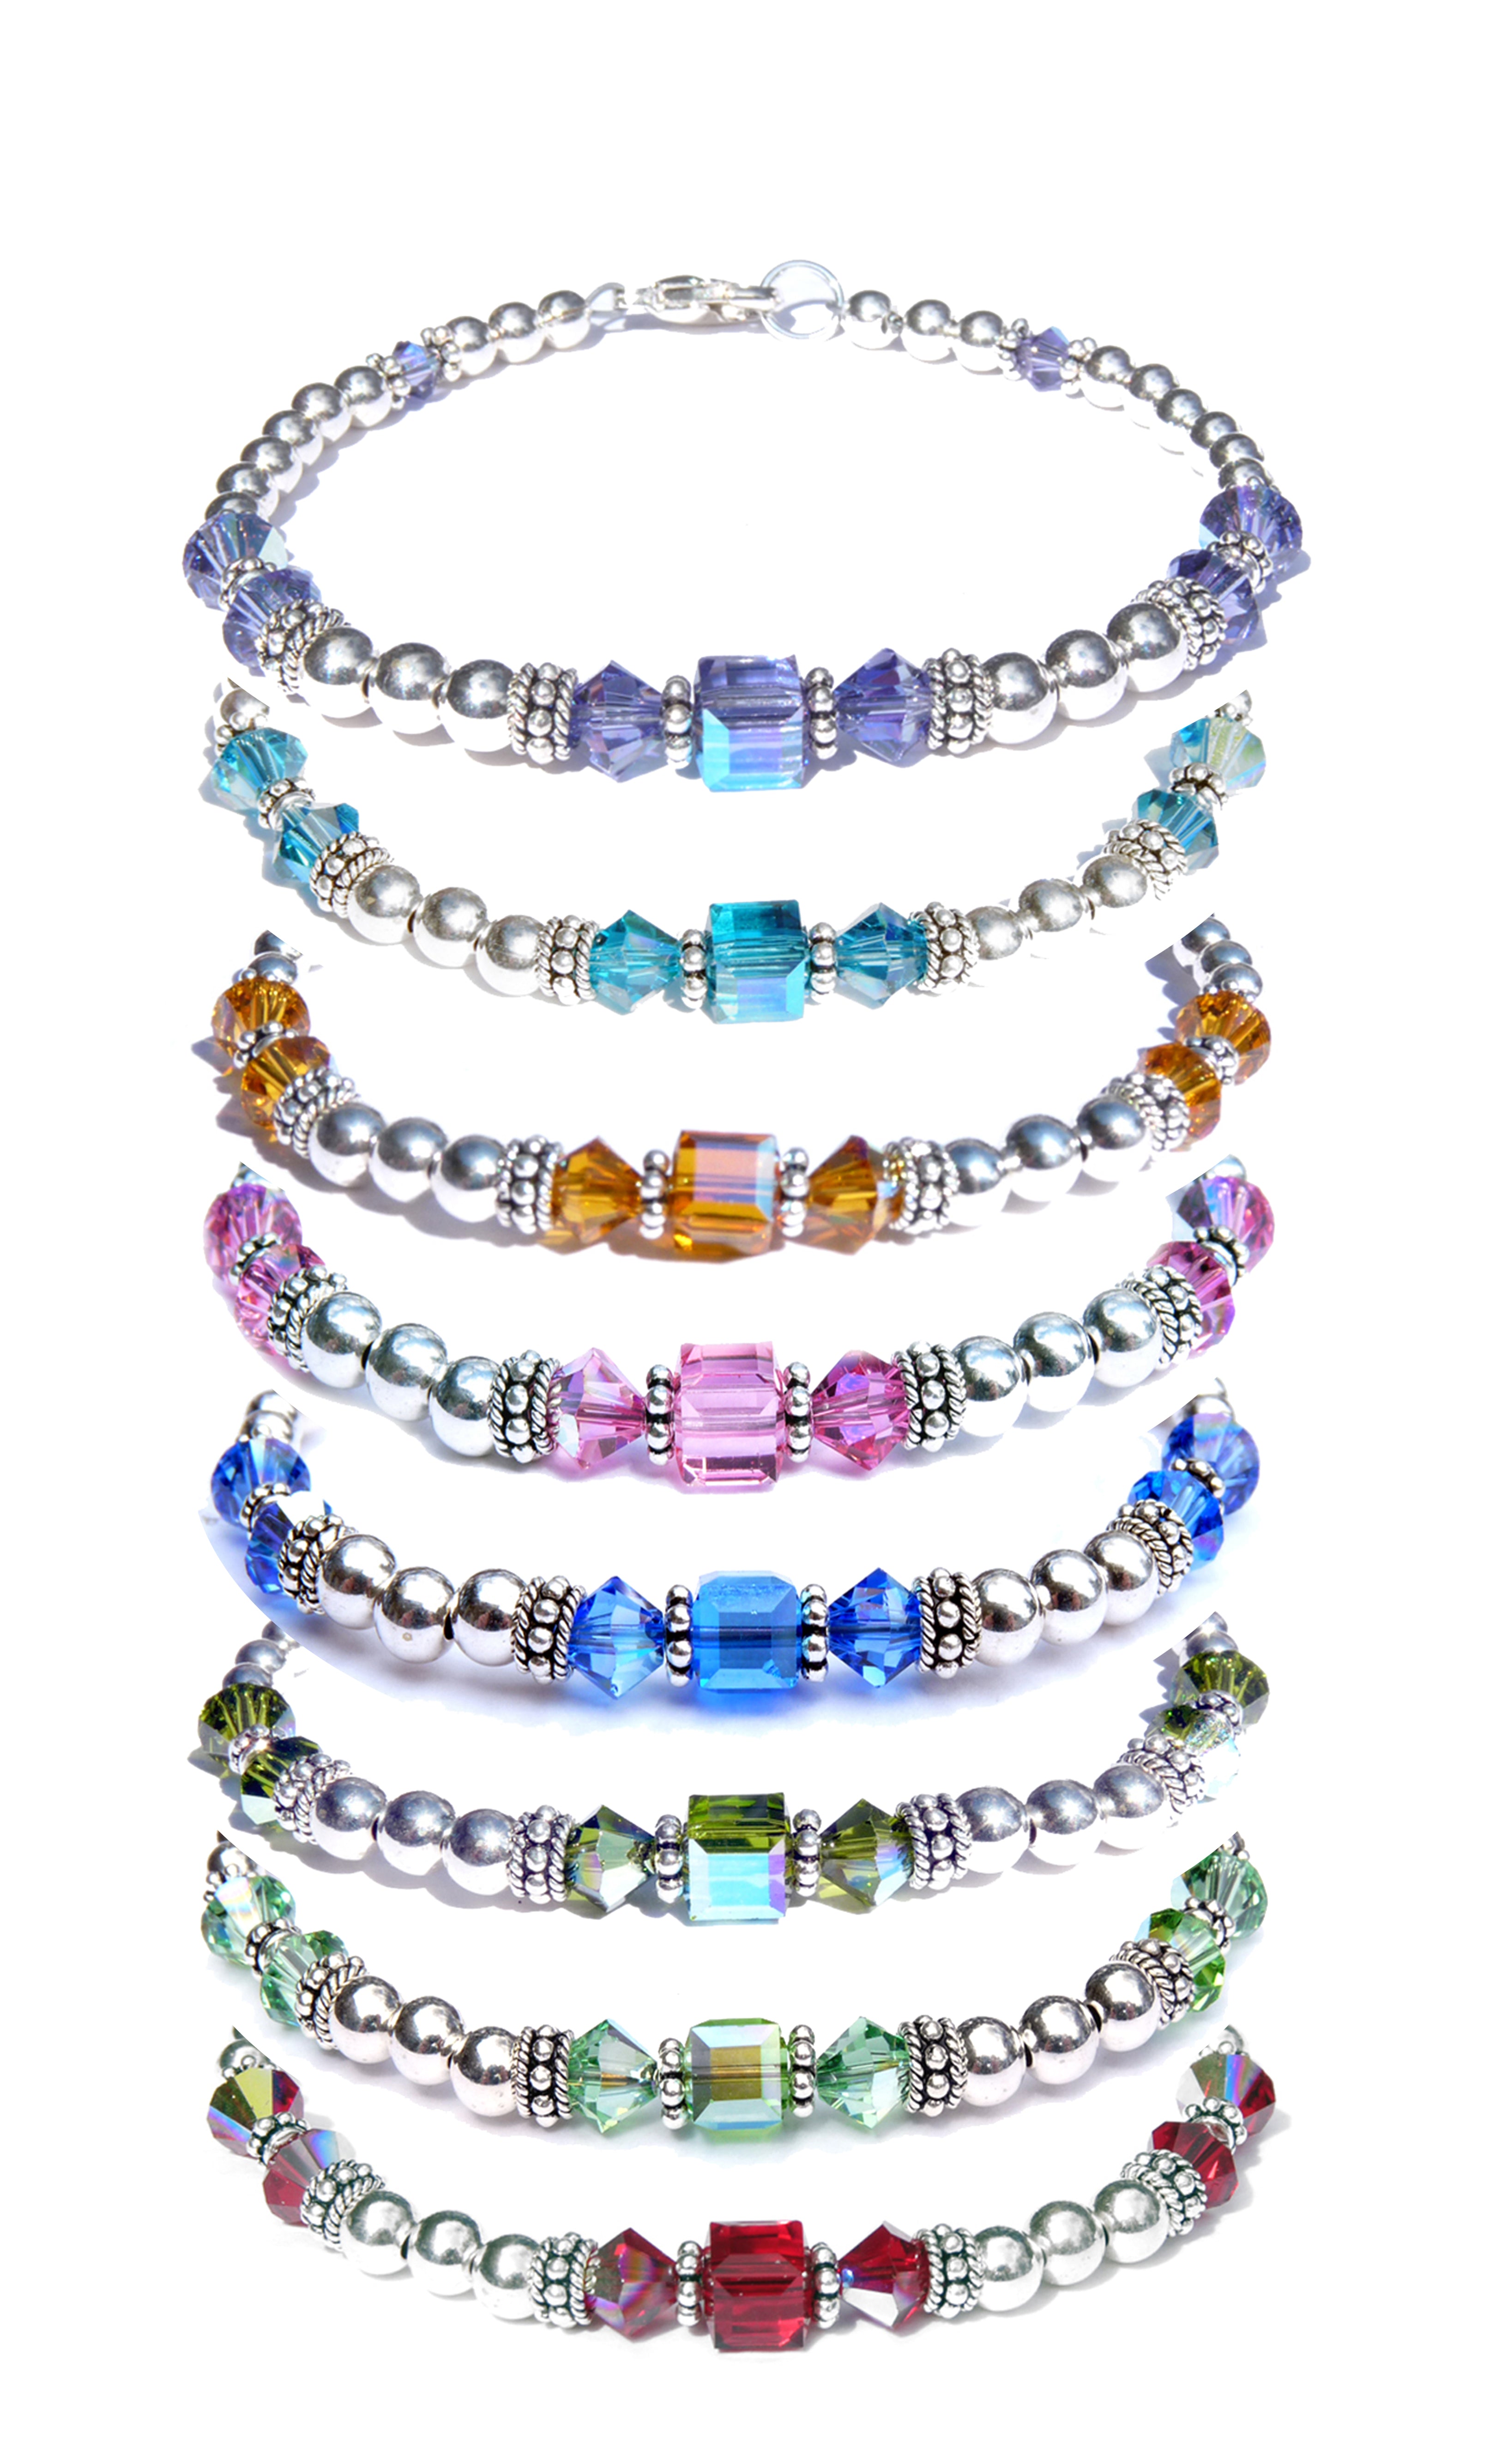 Buy Red Swarovski Crystal Bracelet,aurora Borealis Swarovski Crystal  Bracelet,children's Crystal Bracelet,flower Girl Jewelry,swarovski Crystals  Online in India - Etsy